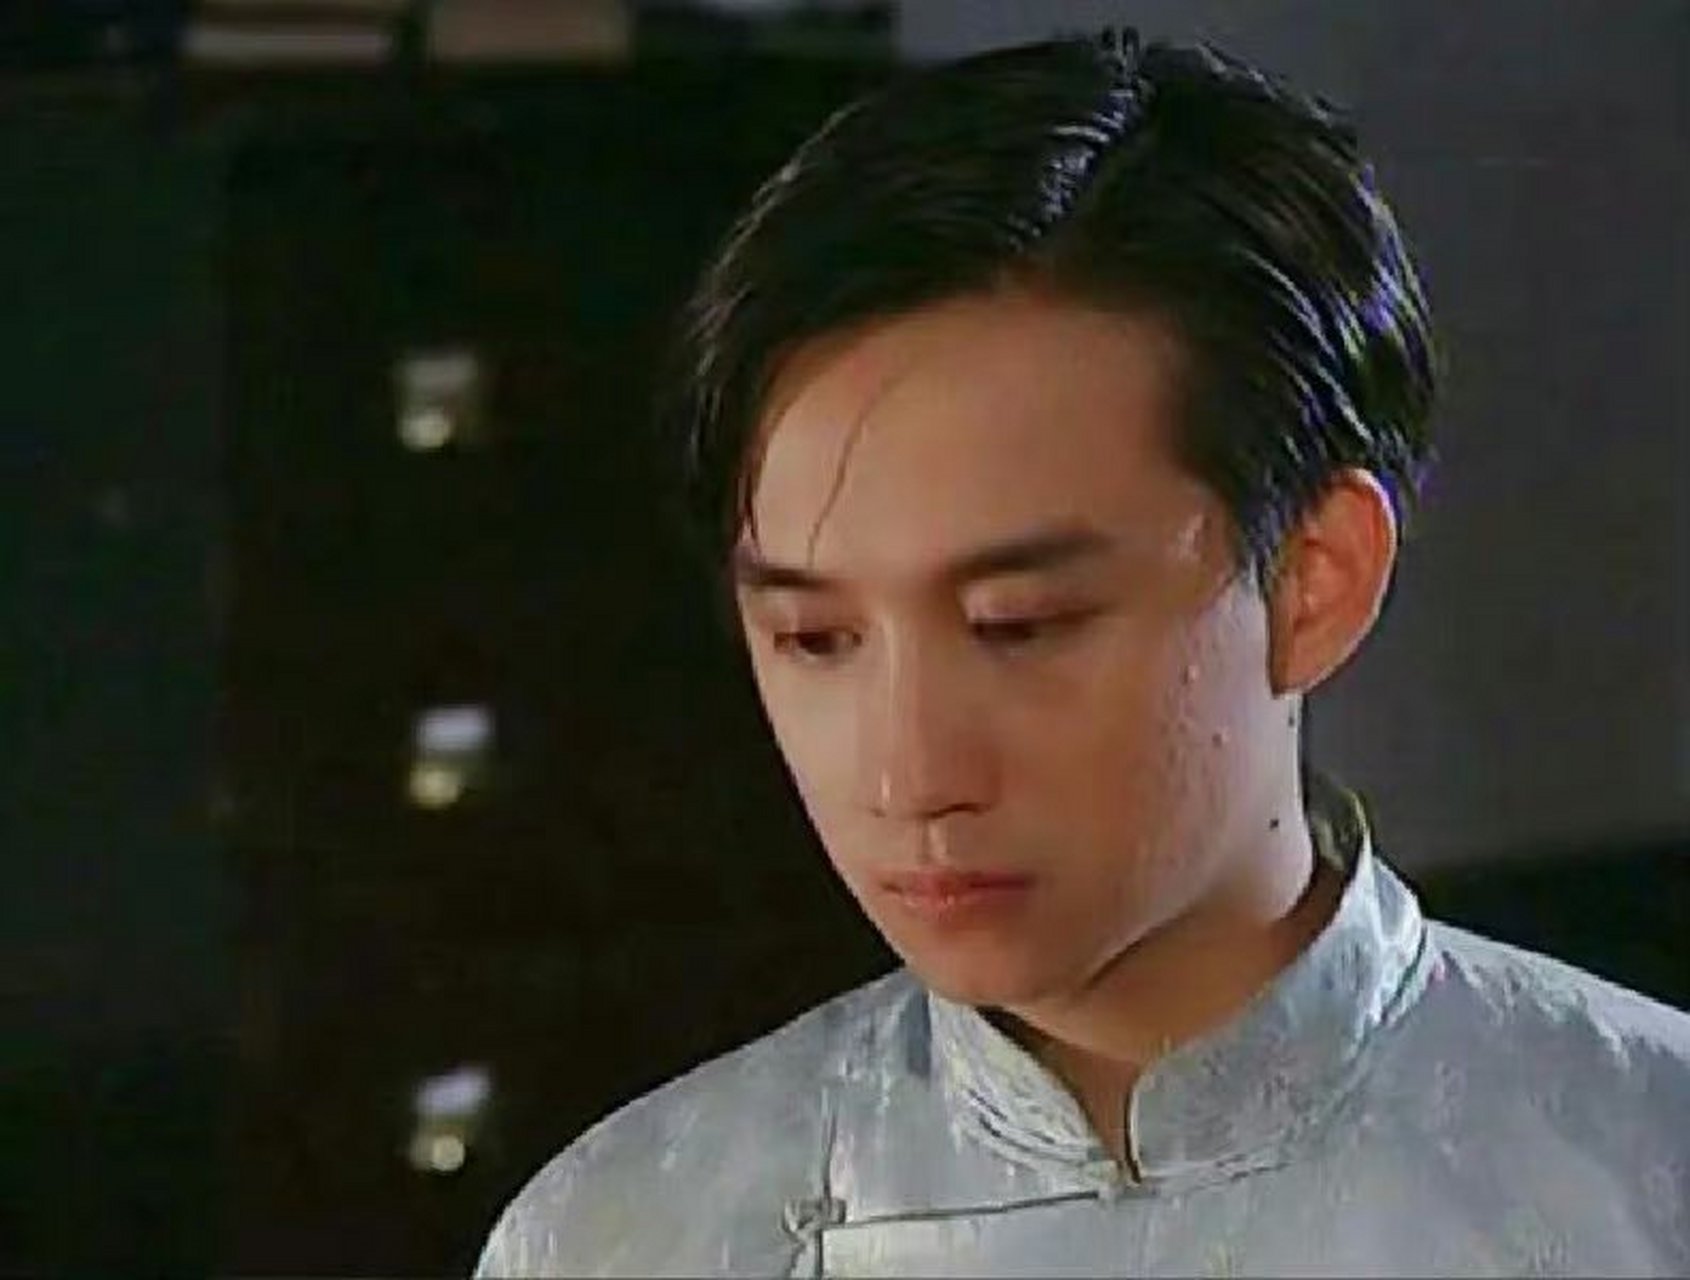 黄磊年轻的时候是真帅啊,这五官好能打